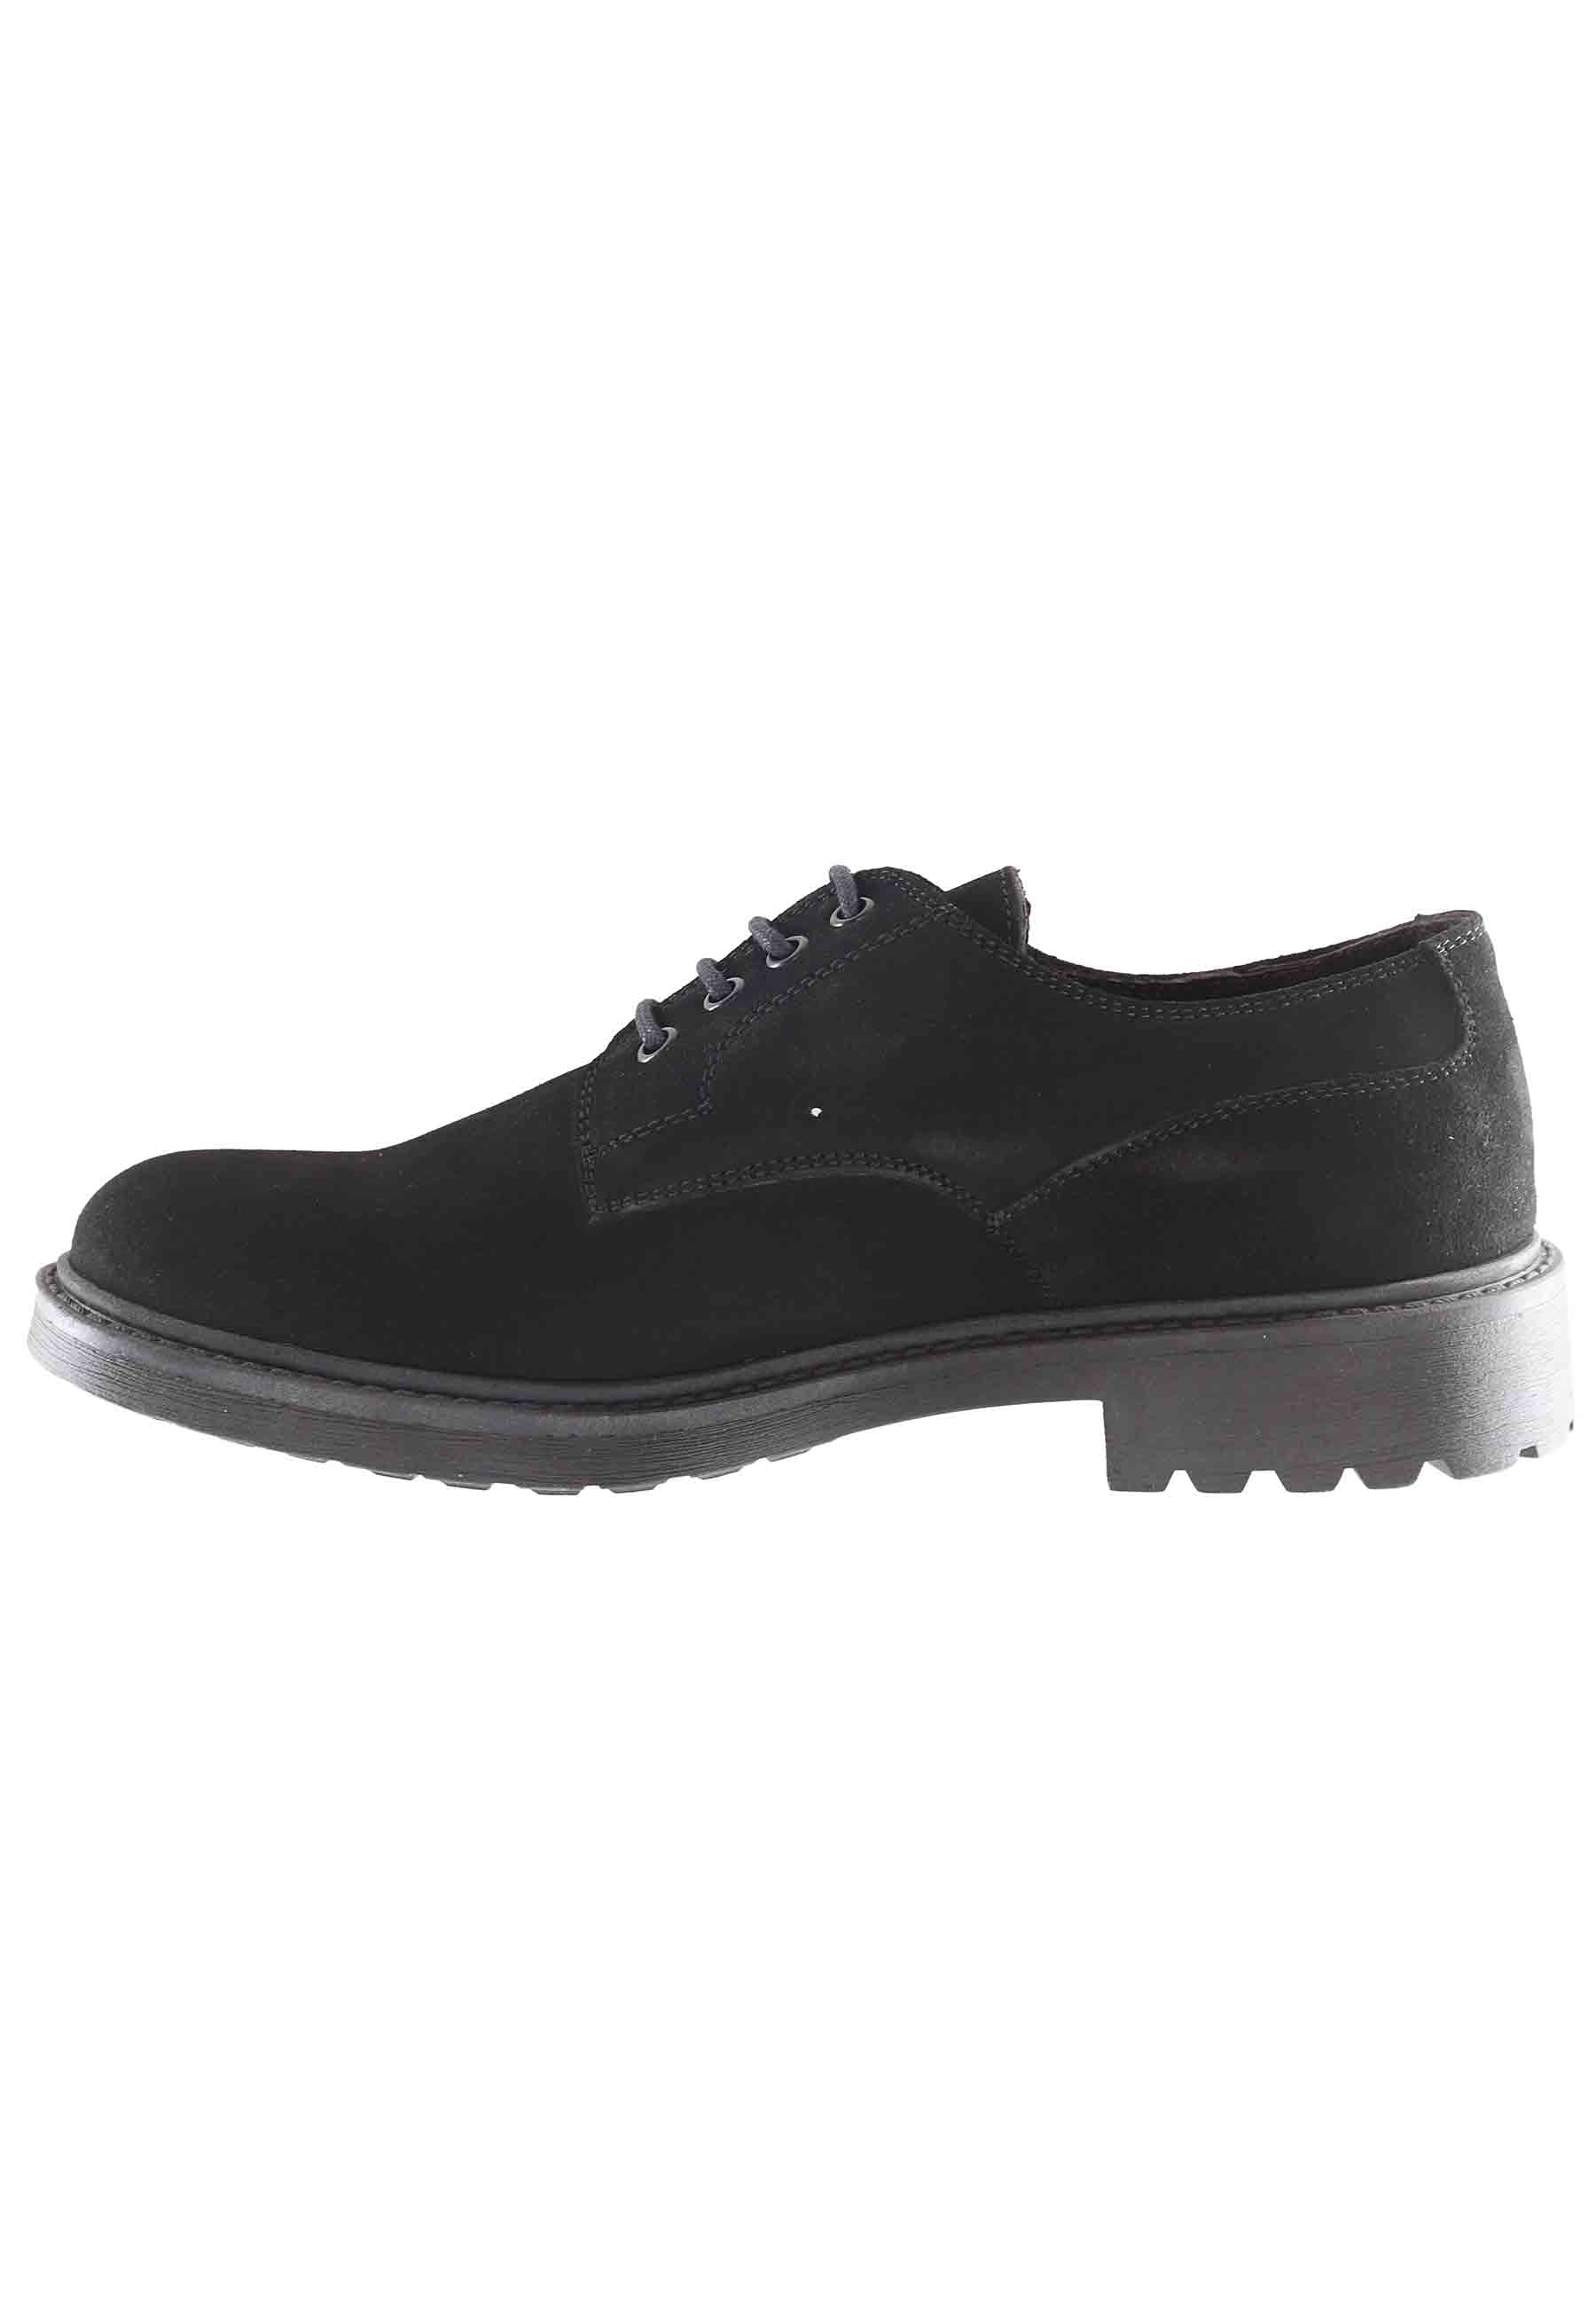 Chaussures à lacets pour hommes en daim graissé noir avec semelle en caoutchouc